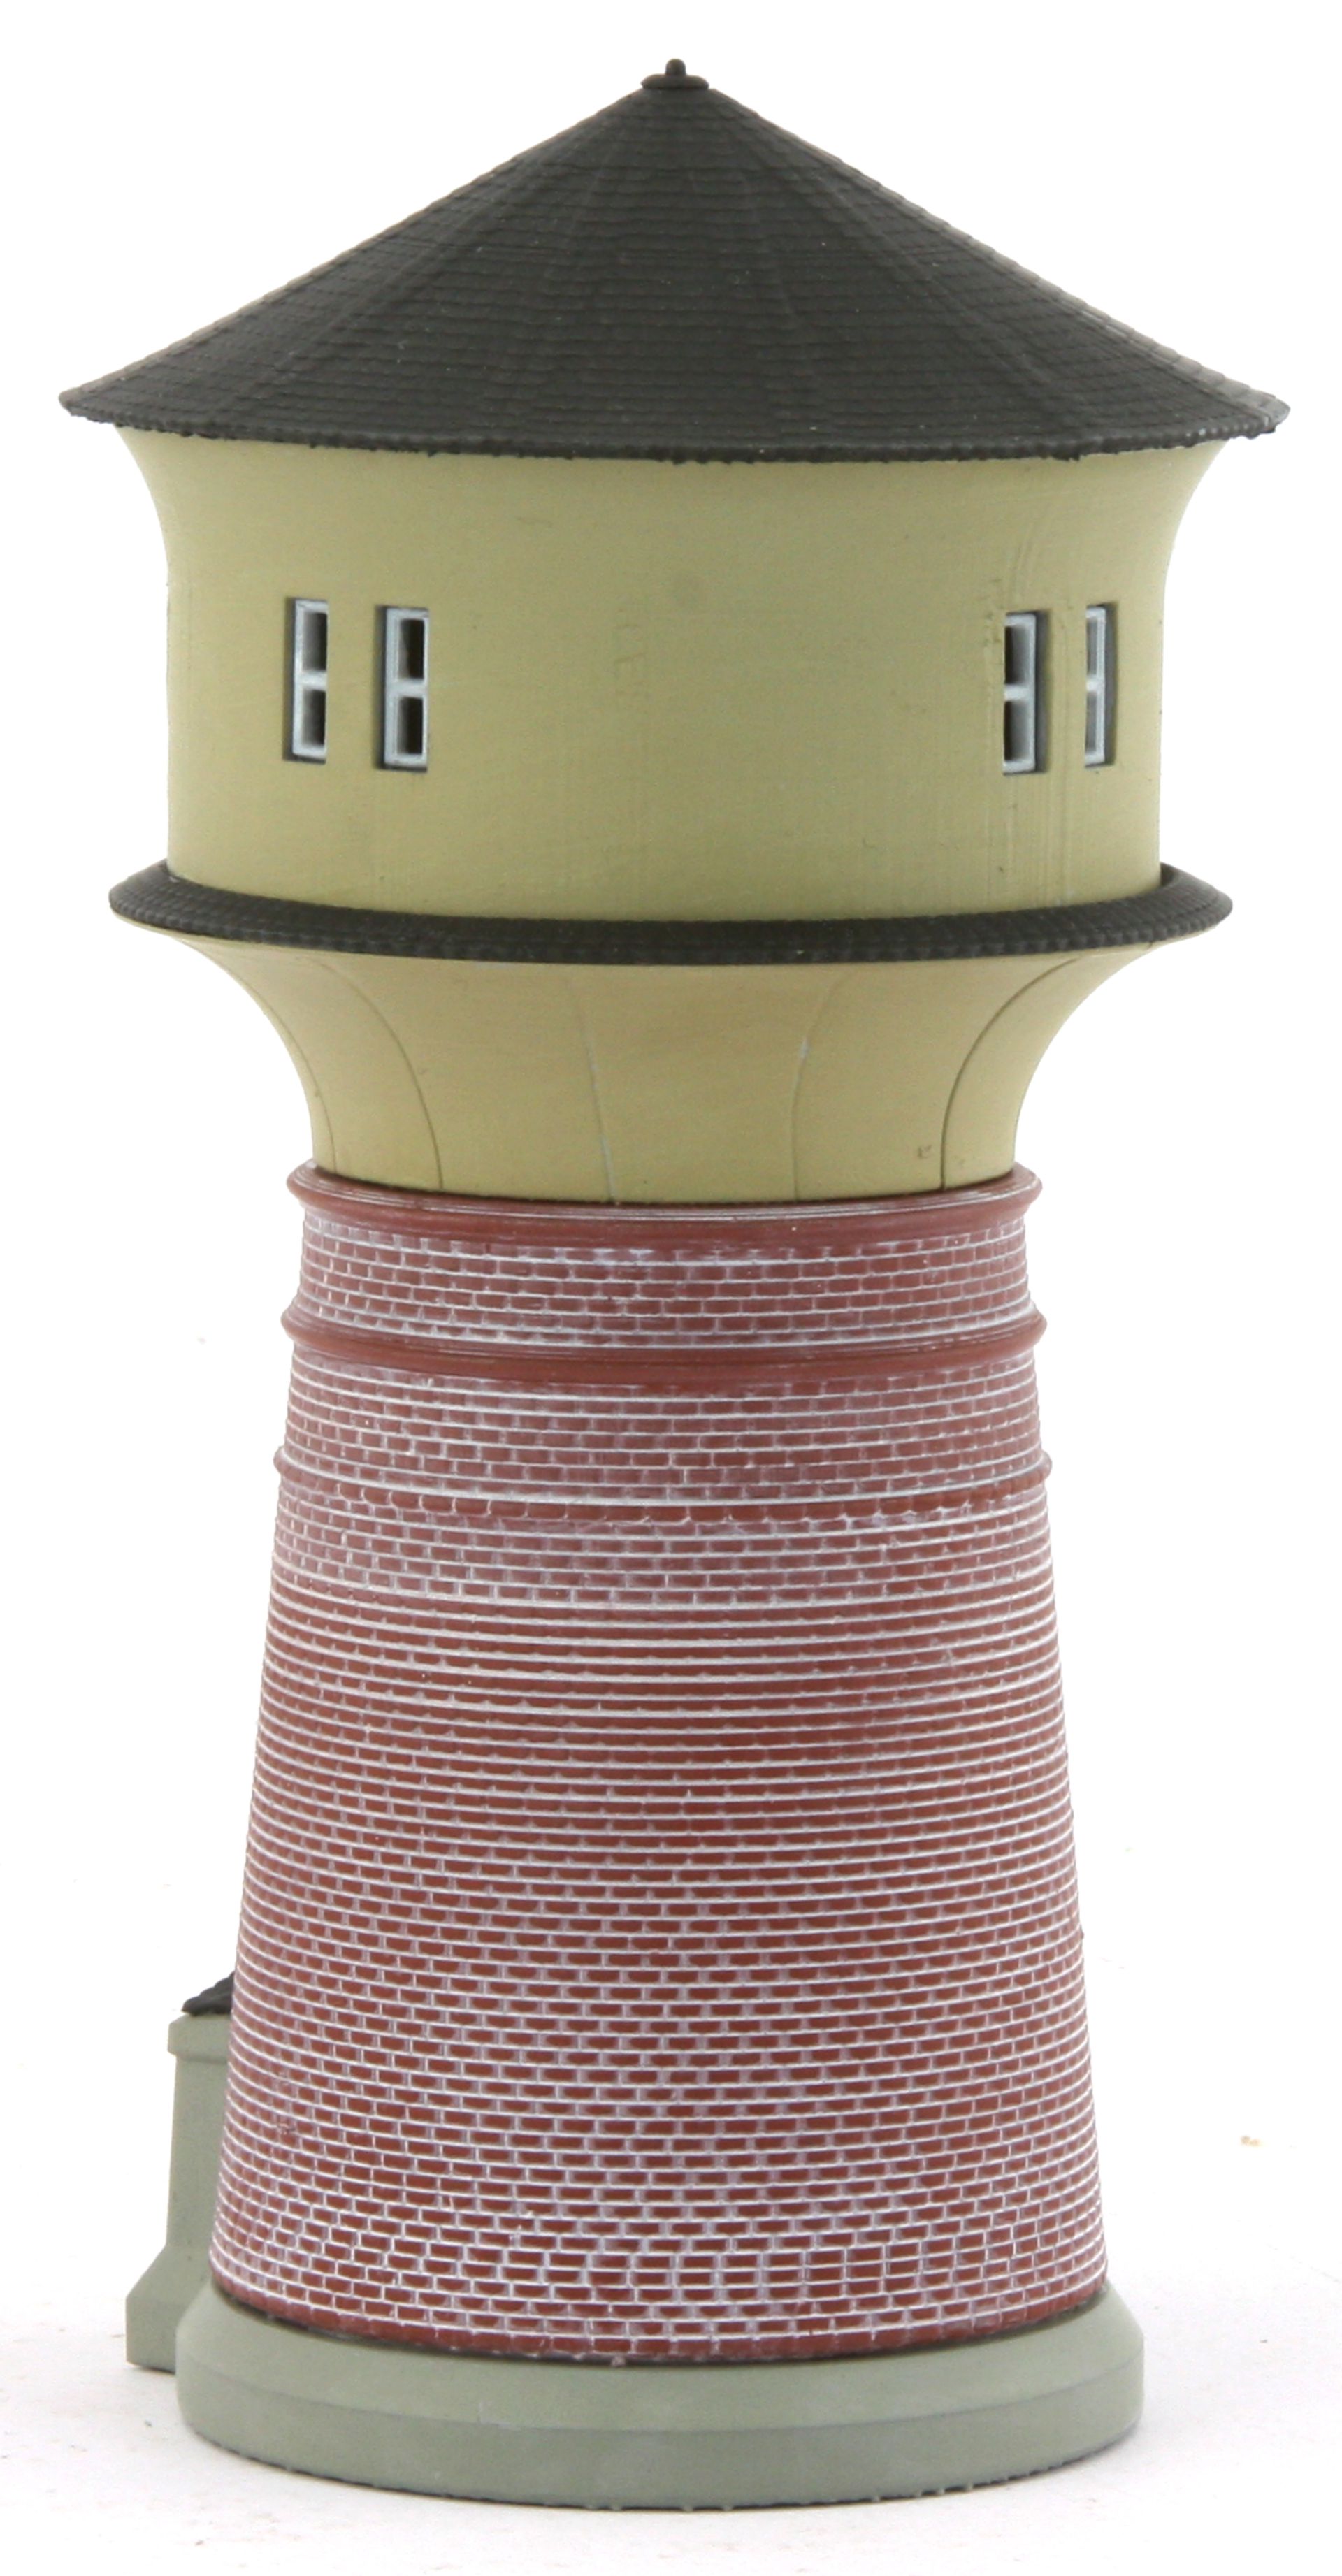 Radestra 314520 - Wasserturm, Höhe 125 mm, coloriertes Fertigmodell